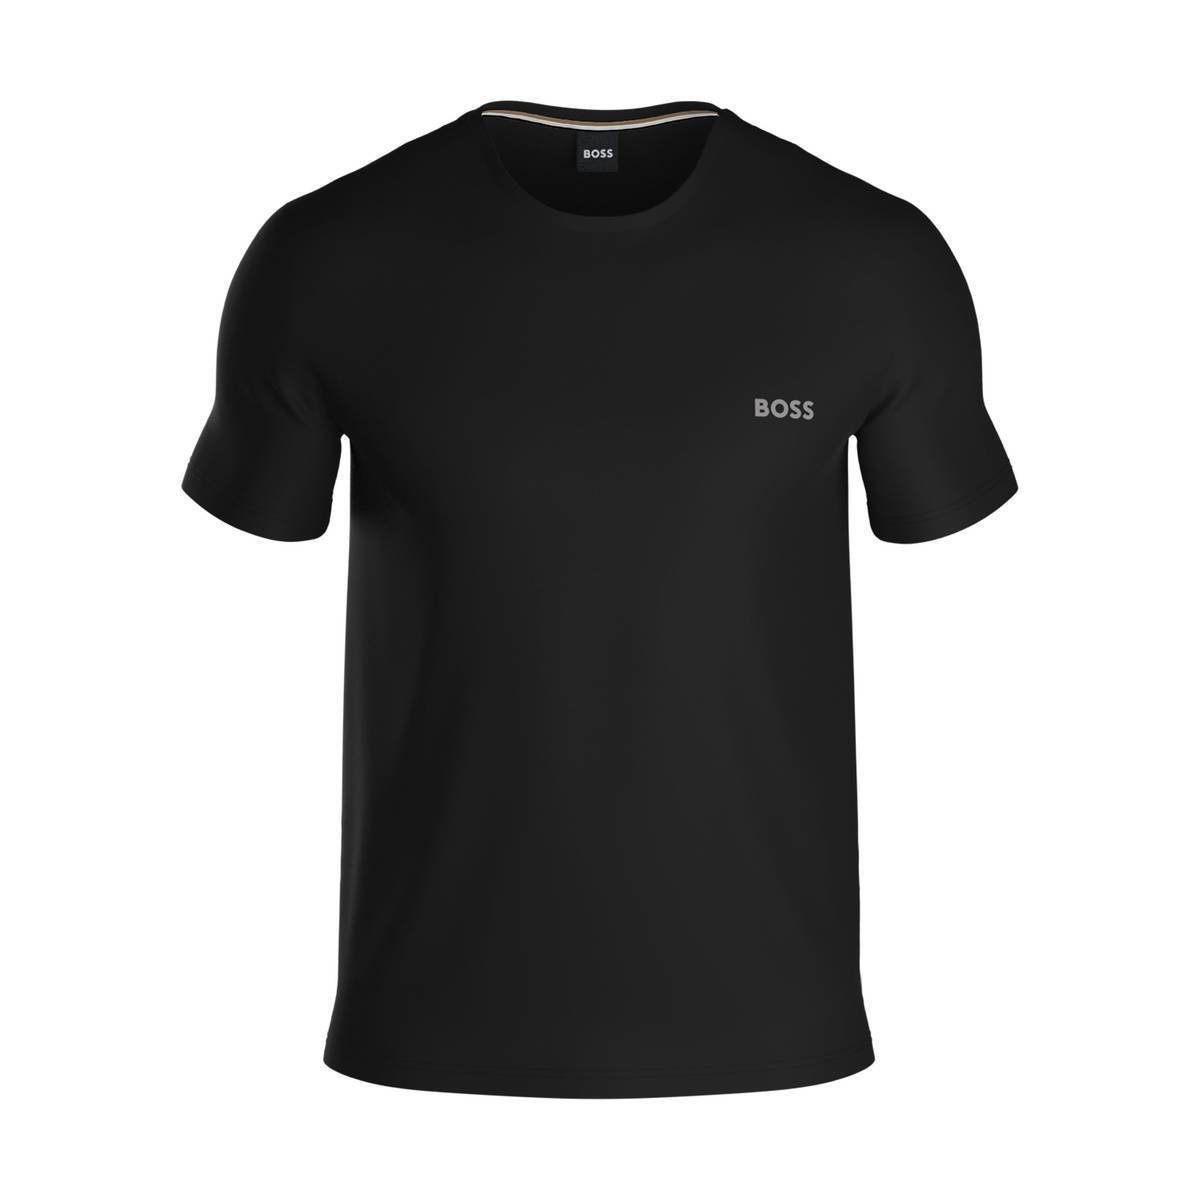 BOSS T-Shirt Herren T-Shirt - Mix&Match, Unterziehshirt